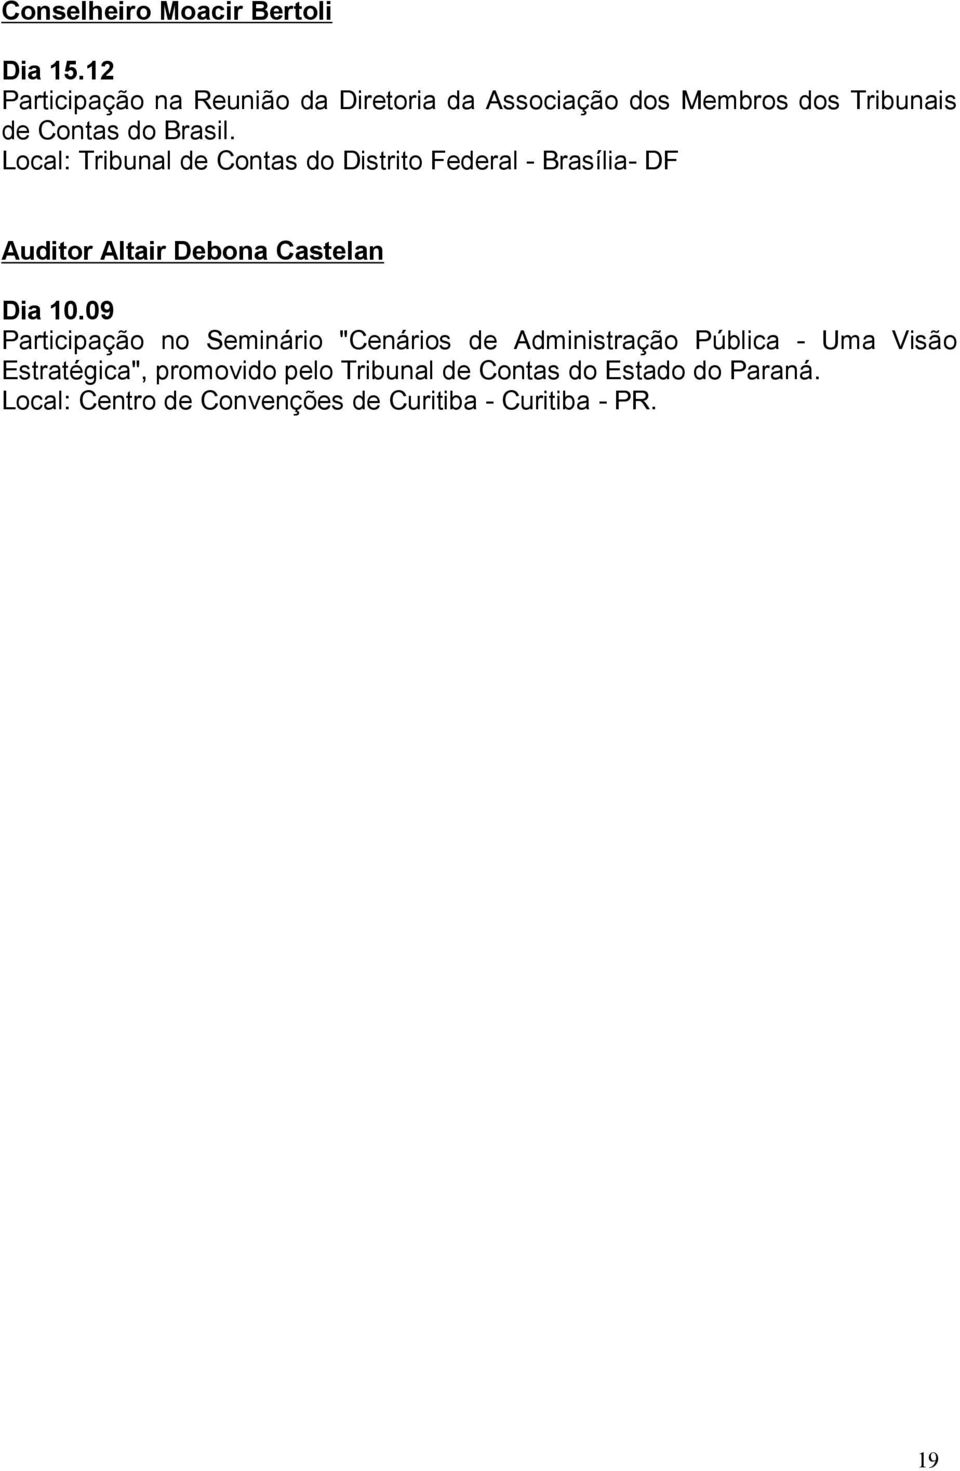 Local: Tribunal de Contas do Distrito Federal - Brasília- DF Auditor Altair Debona Castelan Dia 10.